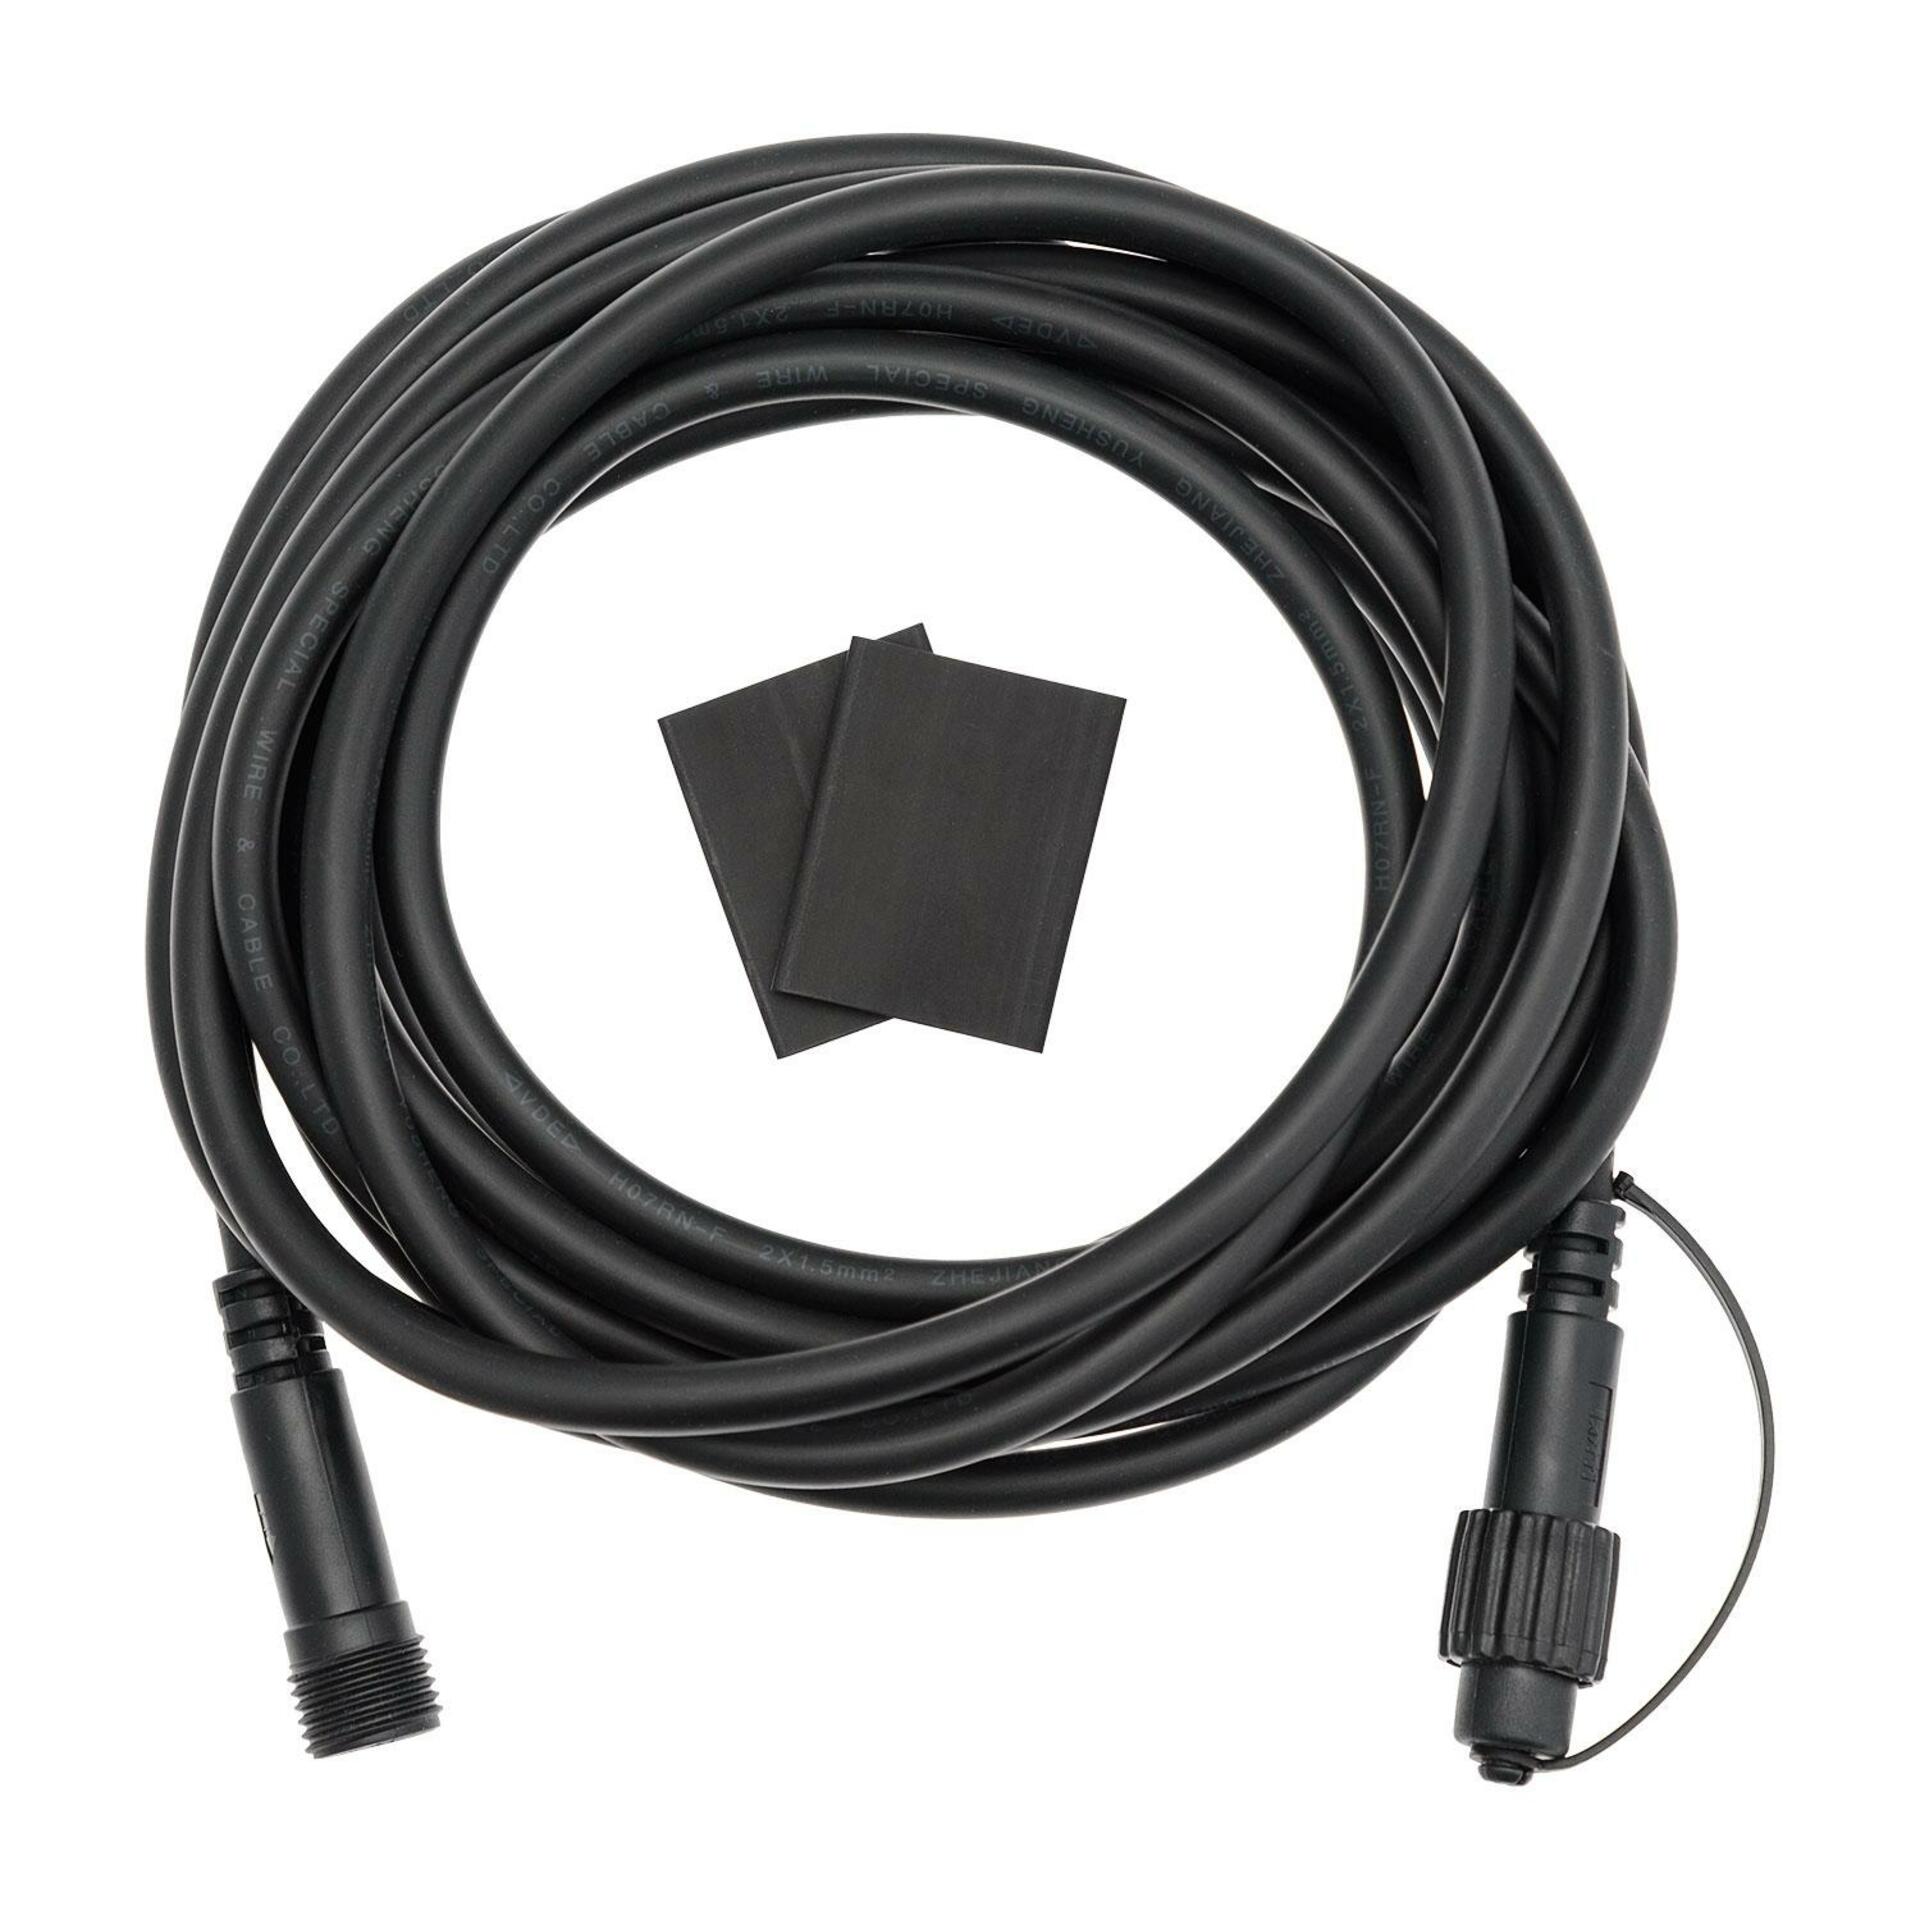 Xmas King XmasKing Prodlužovací kabel pro LED vánoční osvětlení PROFI 2-pin, černá 5m M-EC5 N